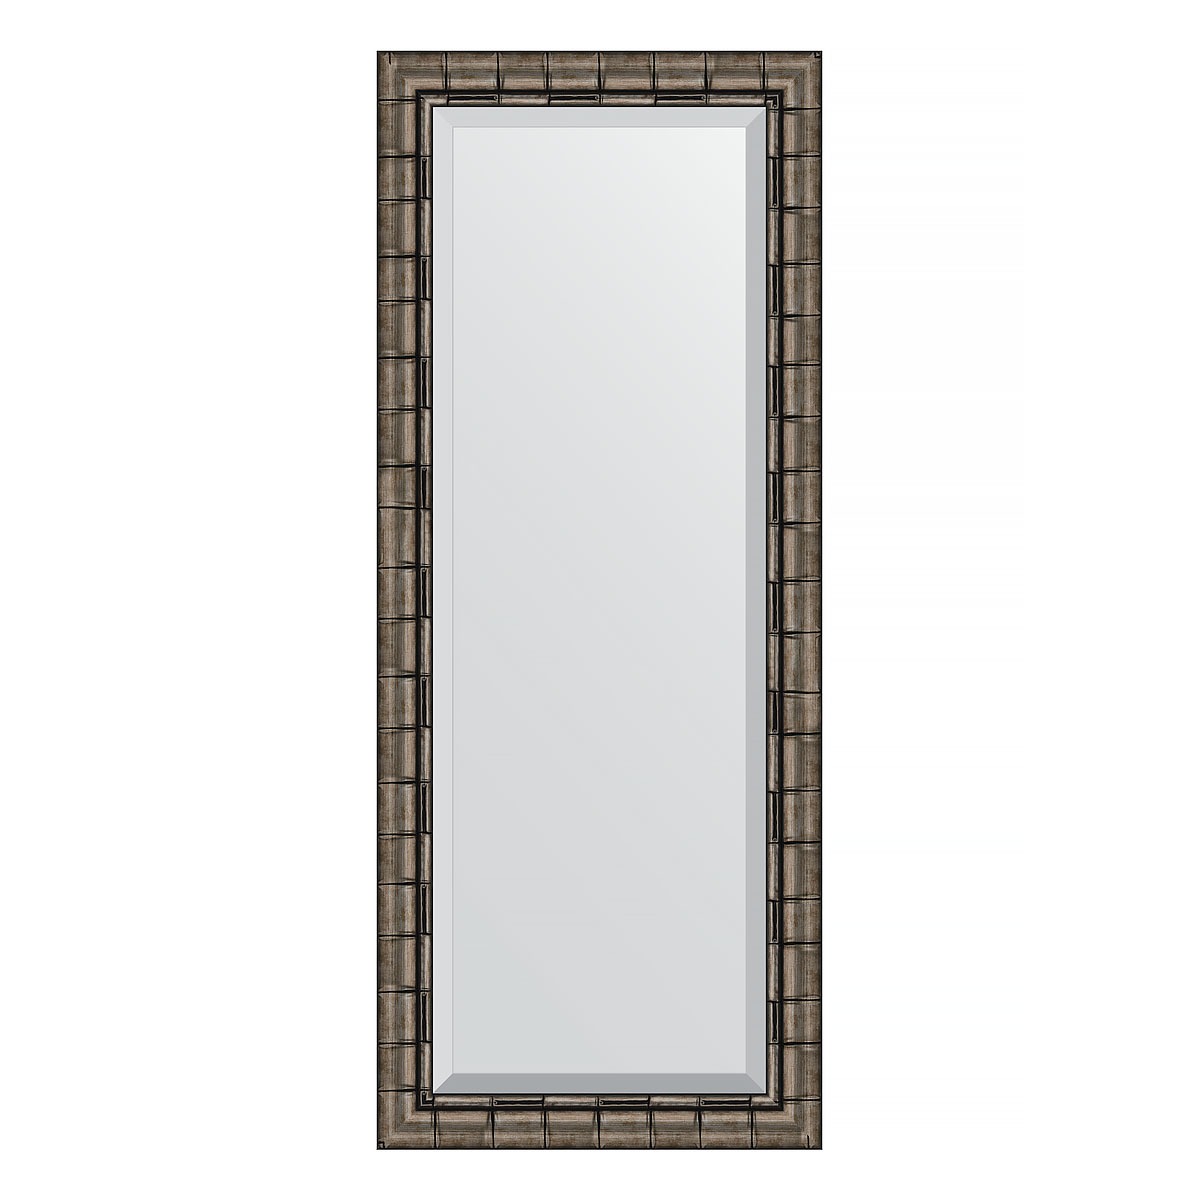 Зеркало с фацетом в багетной раме Evoform серебряный бамбук 73 мм 58х143 см зеркало элегант 60 110 см в раме из зеркальной мозаики для ванной